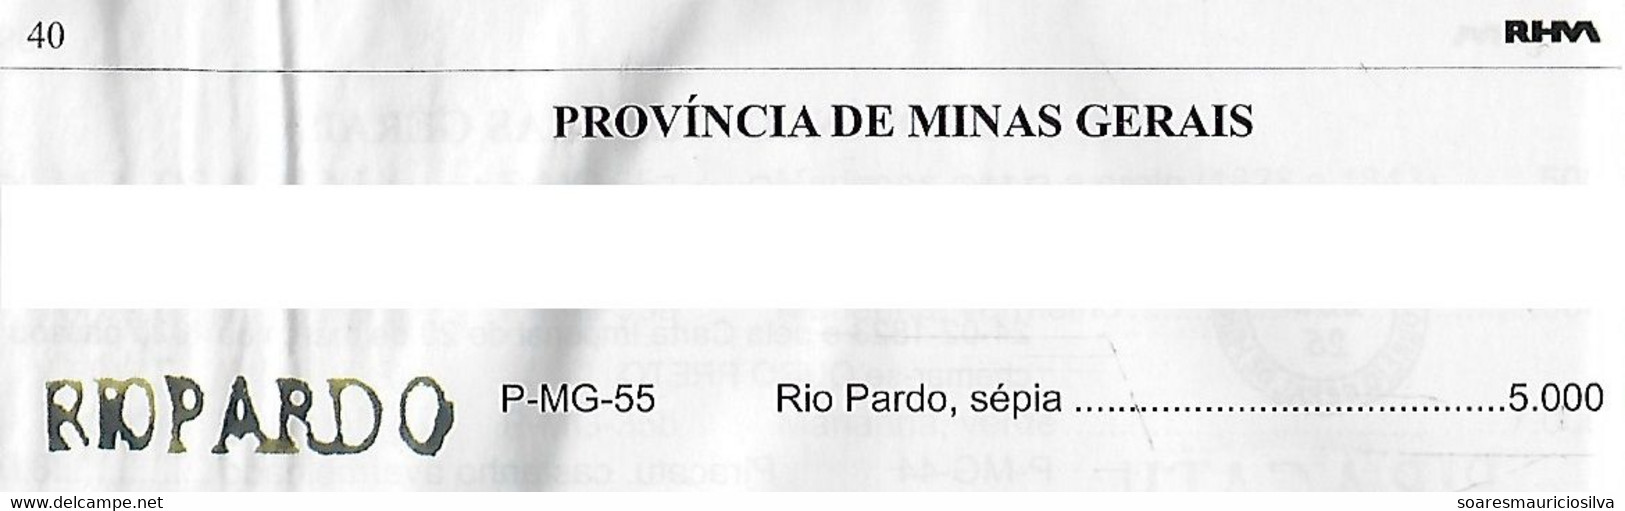 Brazil 1838 Fold Cover SP Public Service From Rio Pardo River To Ouro Preto Pre-philatelic Cancel P-MG-55 (cat US$5,000) - Voorfilatelie